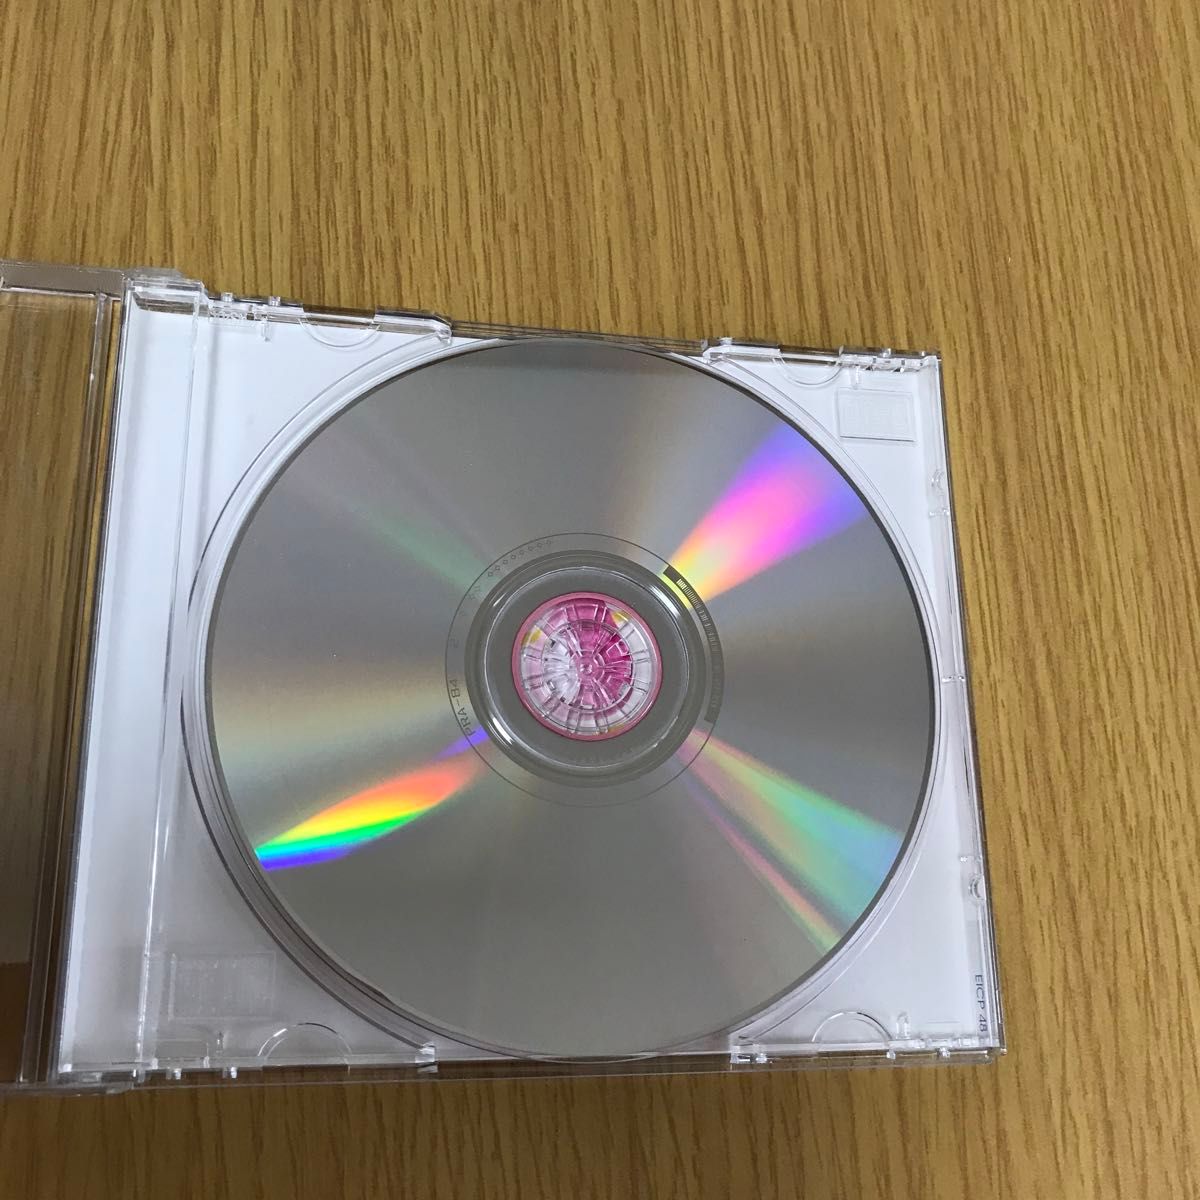 メイヤ／マイベスト 国内盤CD